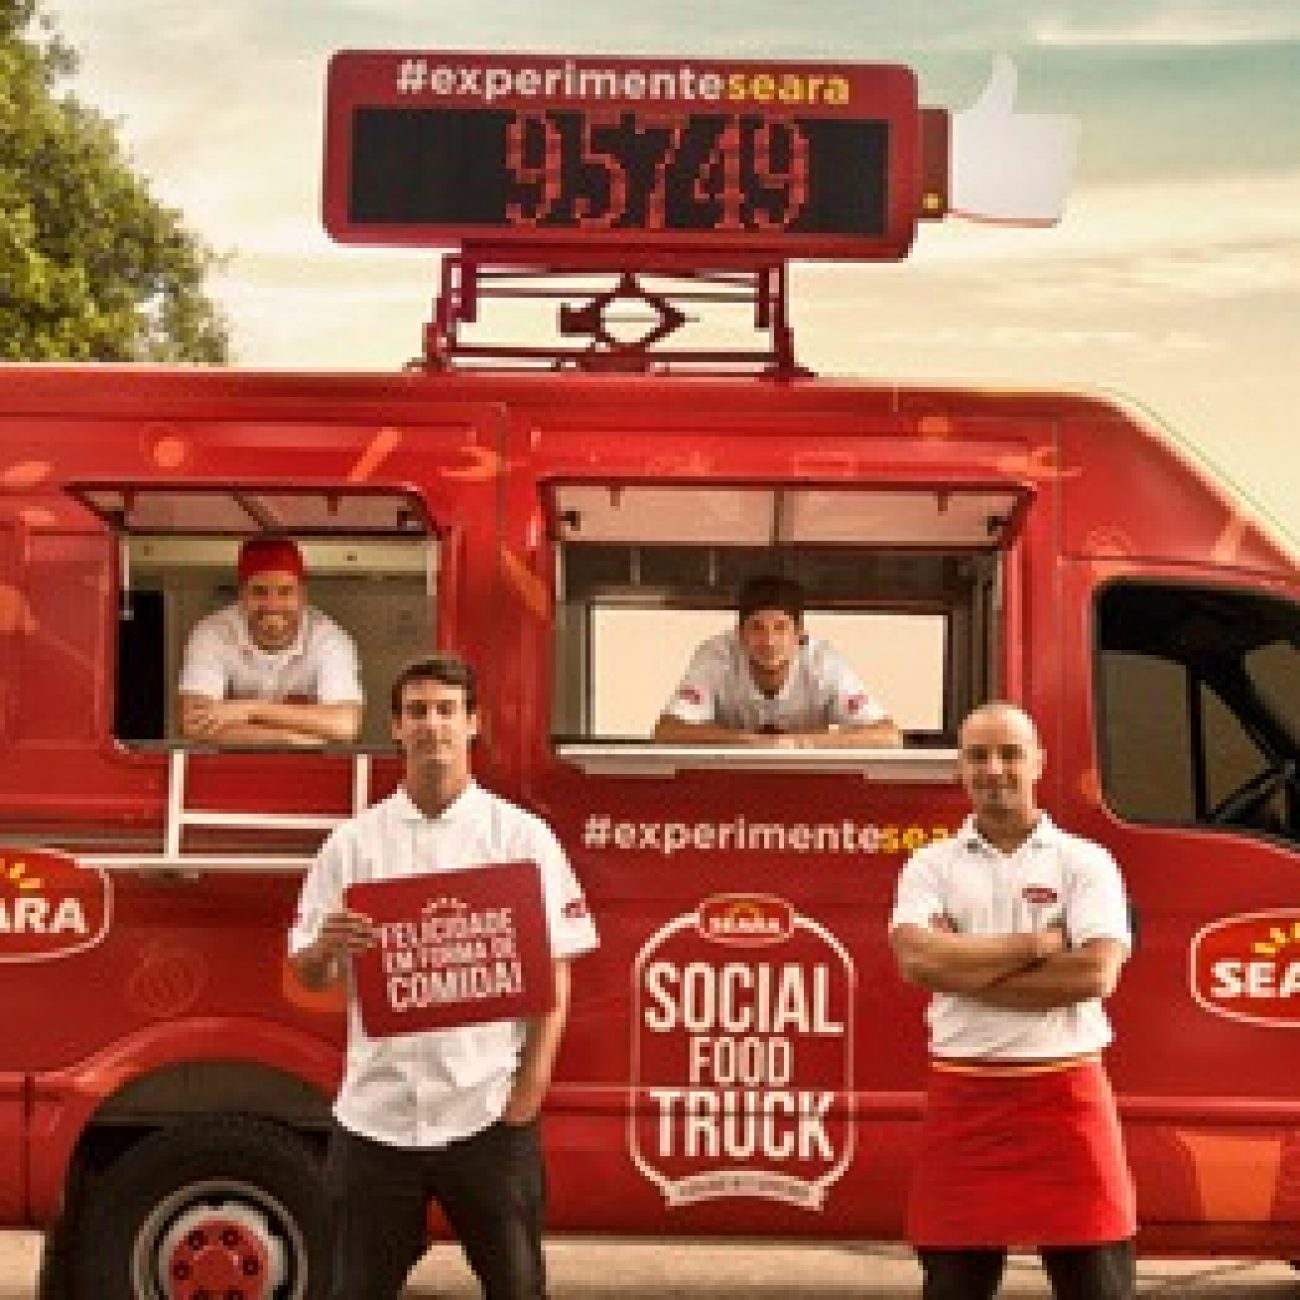 Social Food Truck Seara oferece comida em troca de likes